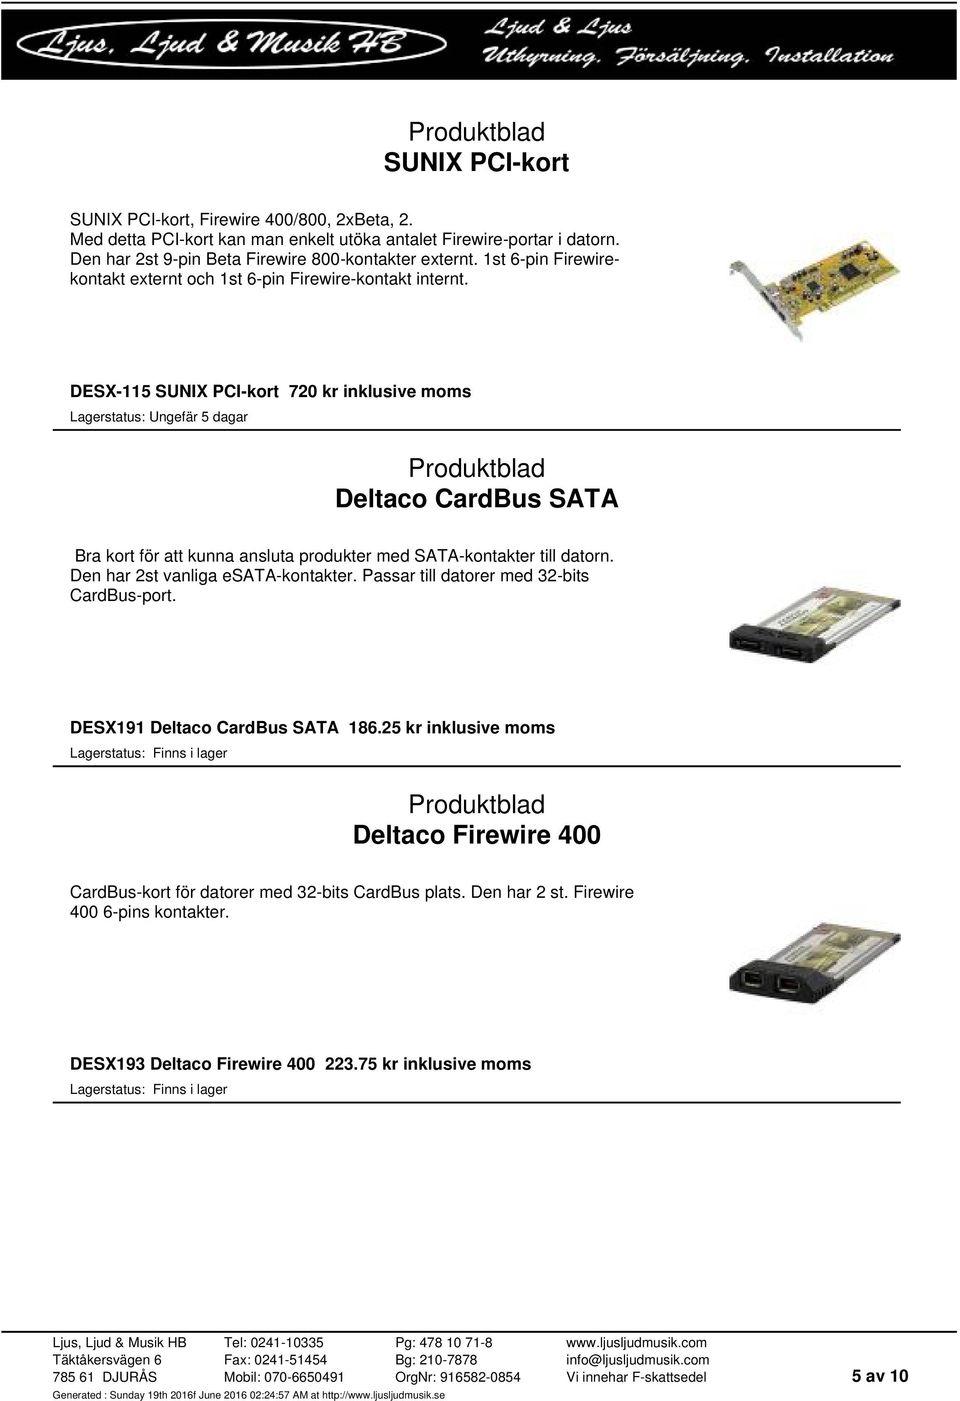 DESX-115 SUNIX PCI-kort 720 kr inklusive moms Deltaco CardBus SATA Bra kort för att kunna ansluta produkter med SATA-kontakter till datorn. Den har 2st vanliga esata-kontakter.